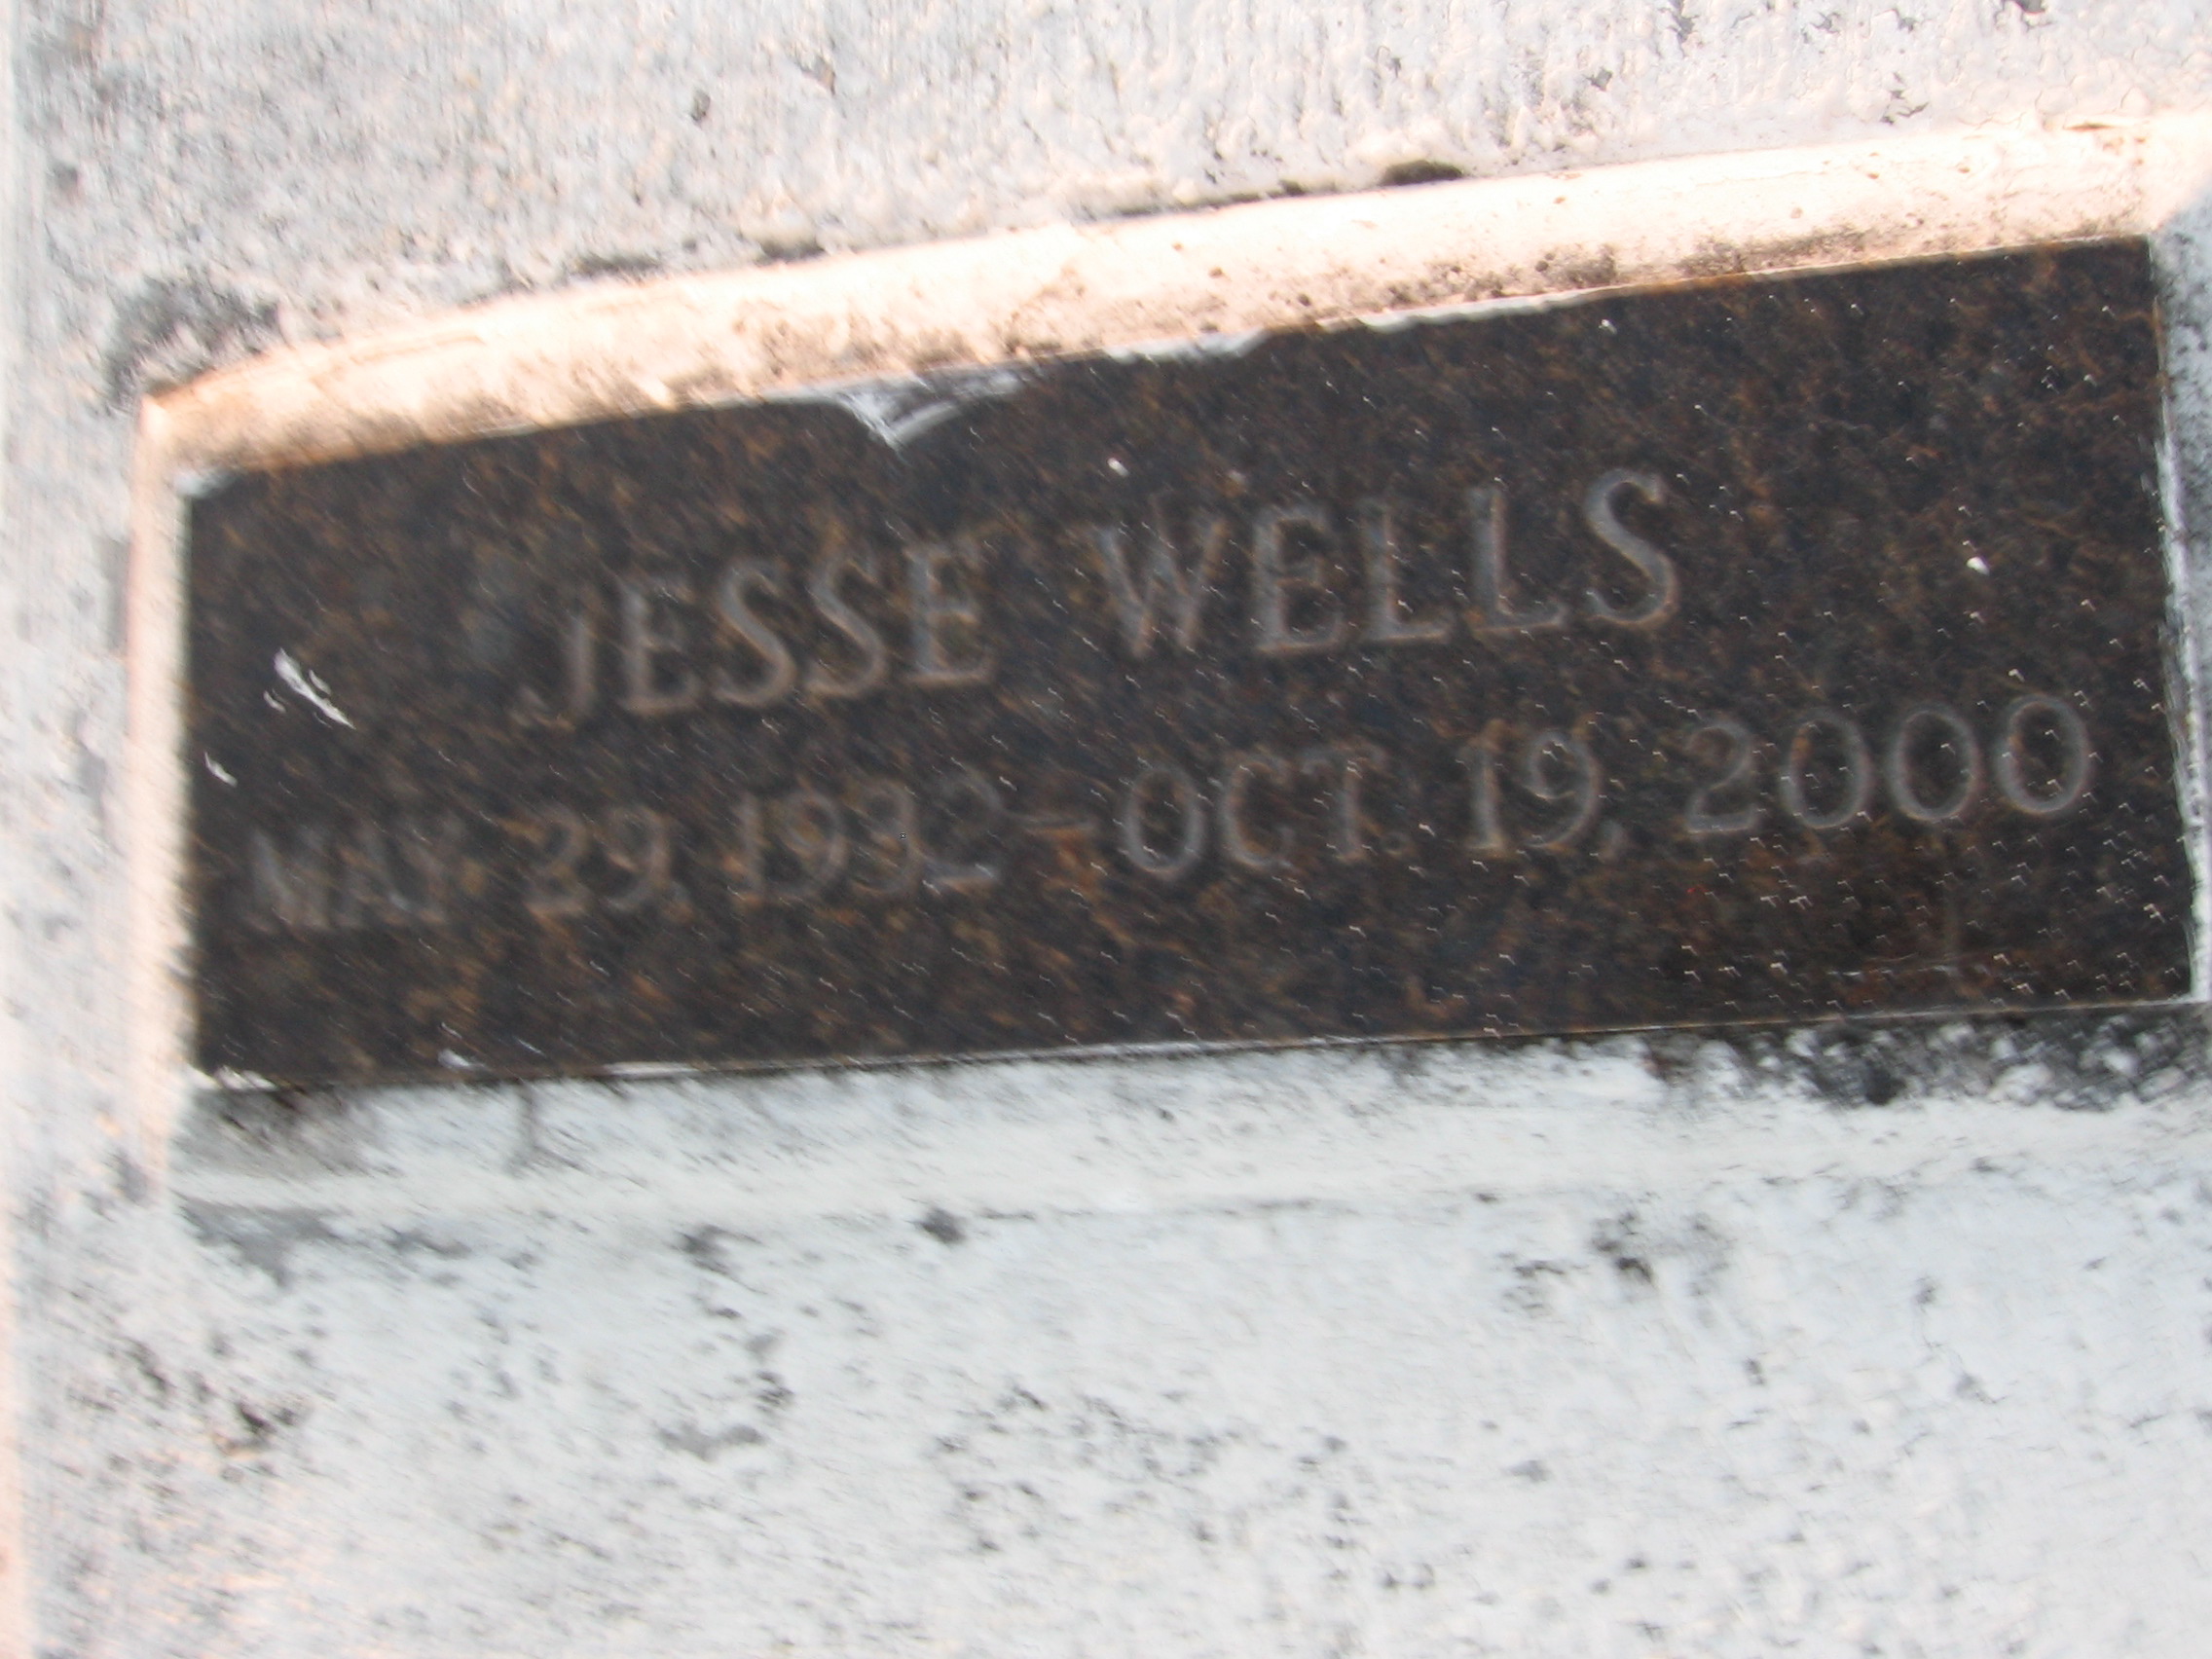 Jesse C Wells